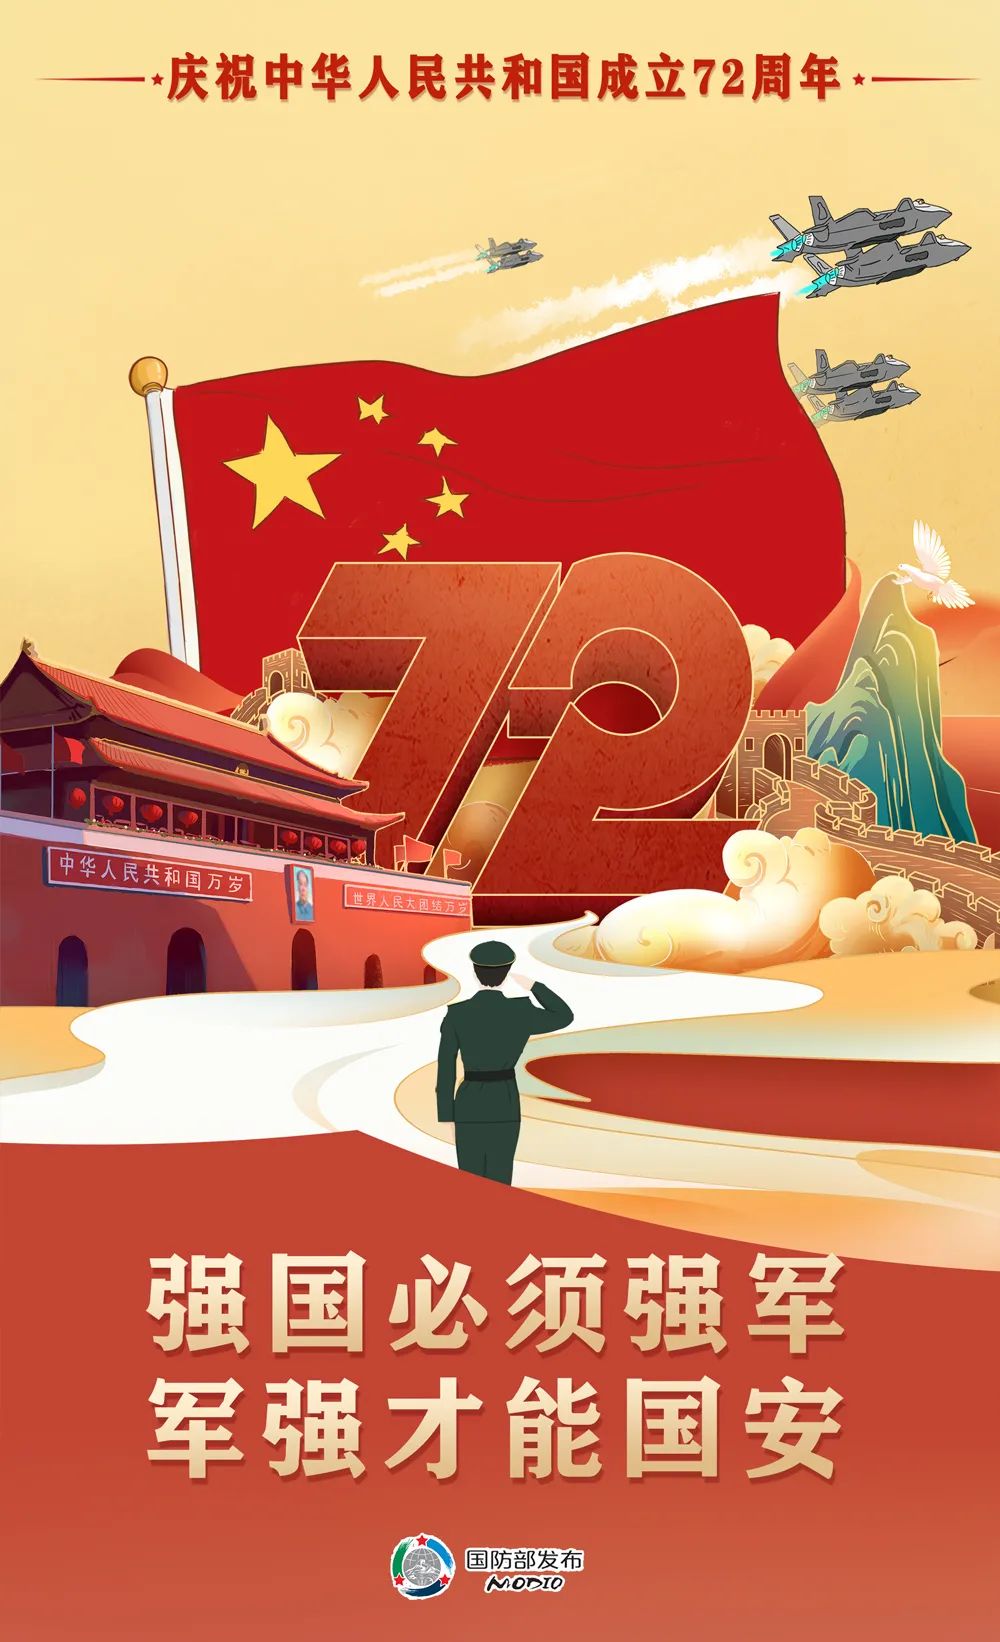 正文   72年披荆斩棘,72年砥砺奋进,中国共产党团结带领全国各族人民